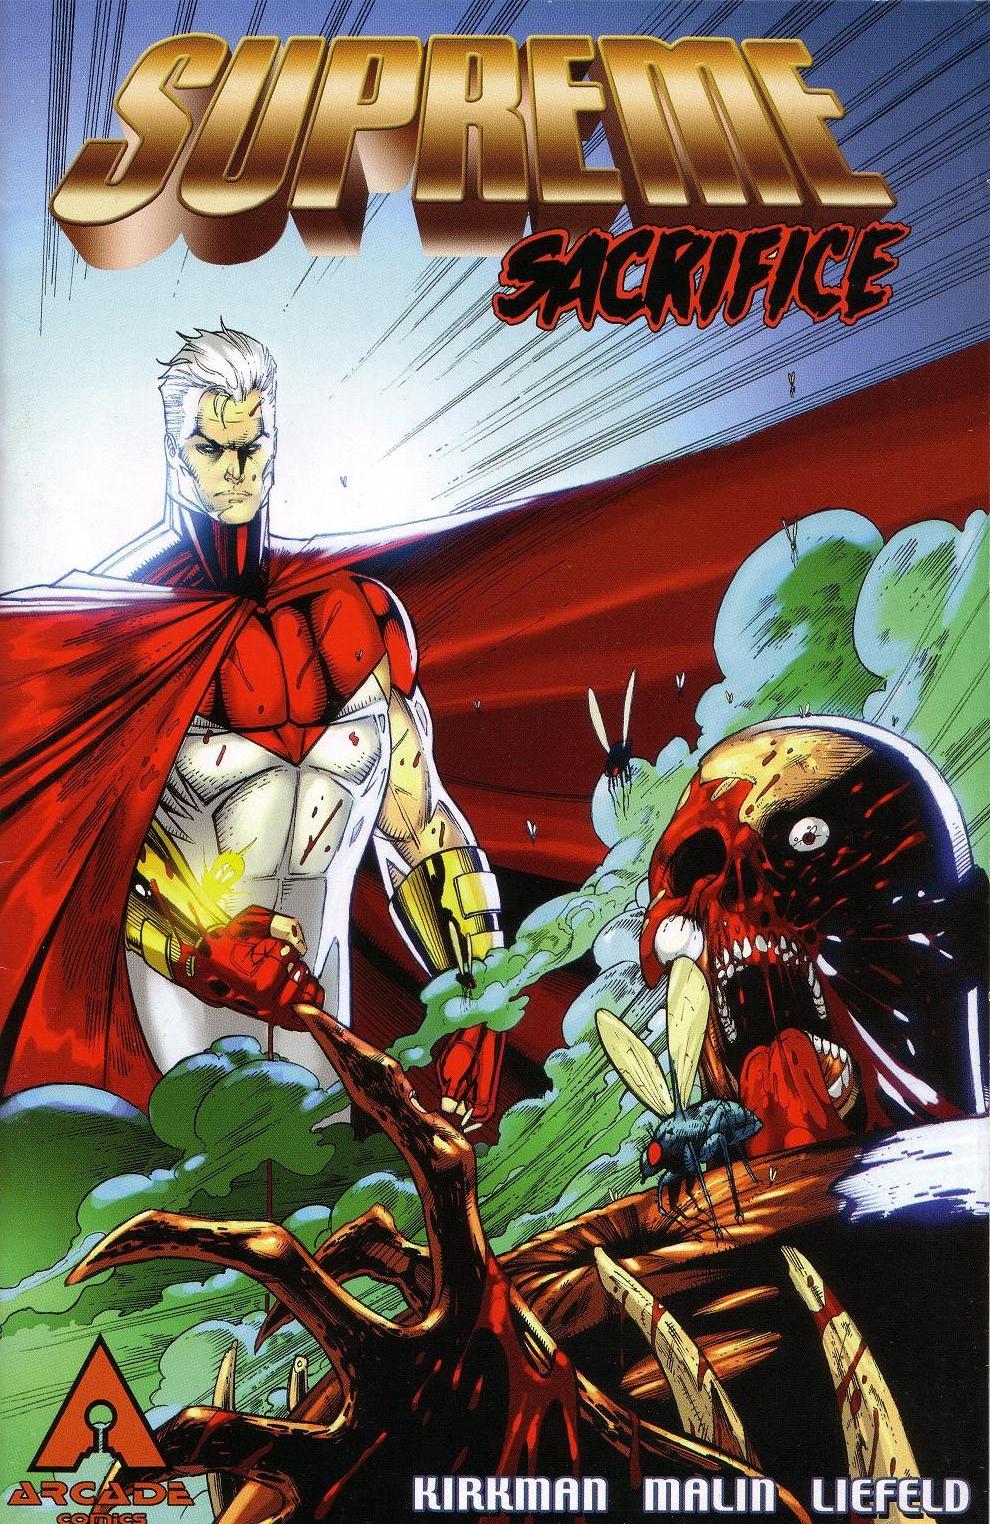 Read online Supreme: Supreme Sacrifice comic -  Issue # Full - 12